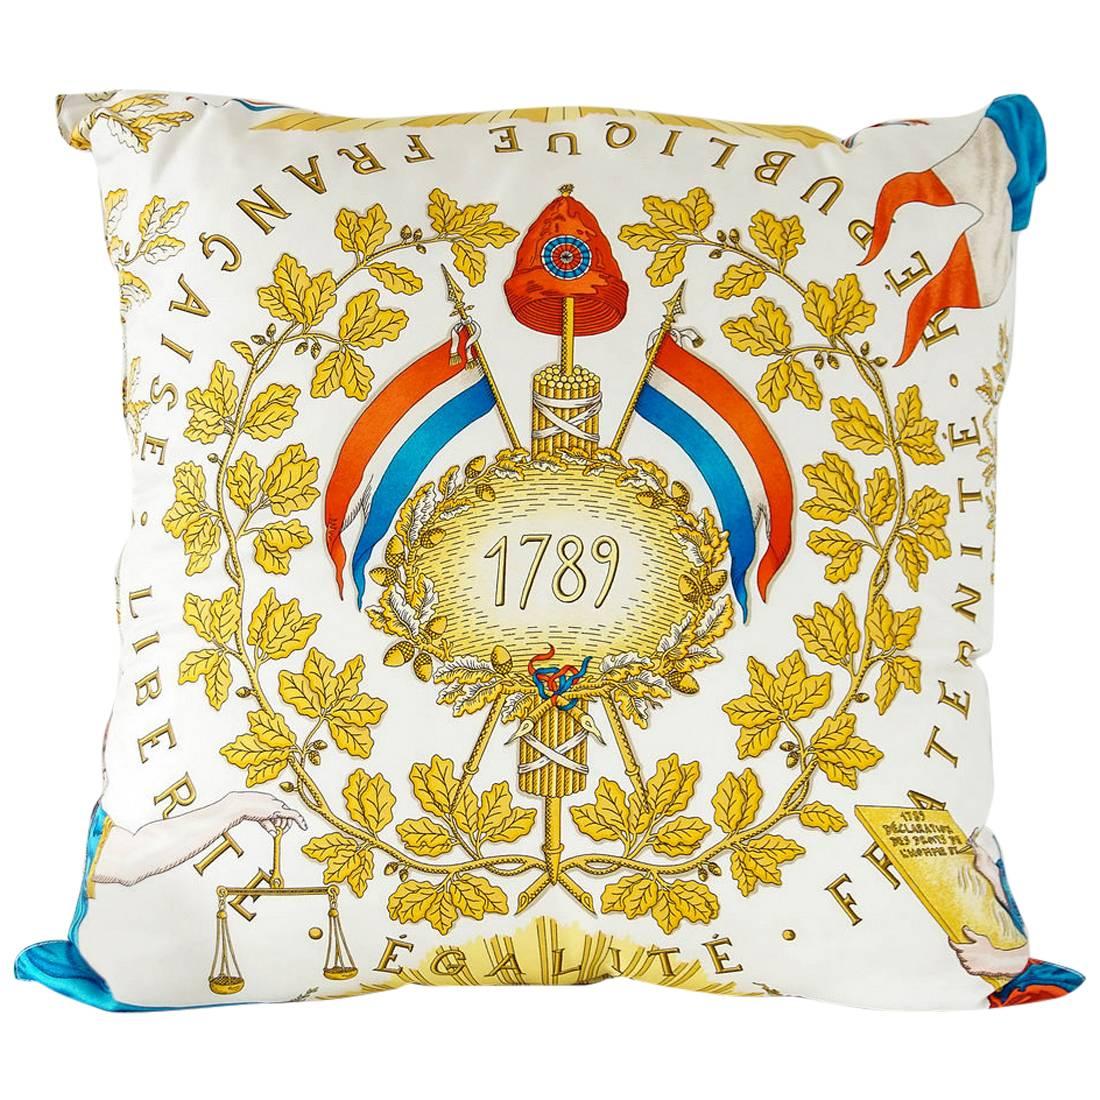 Hermes Print Liberte Egalite Fraternite 1789 Republique Francaise Scarf Pillow 